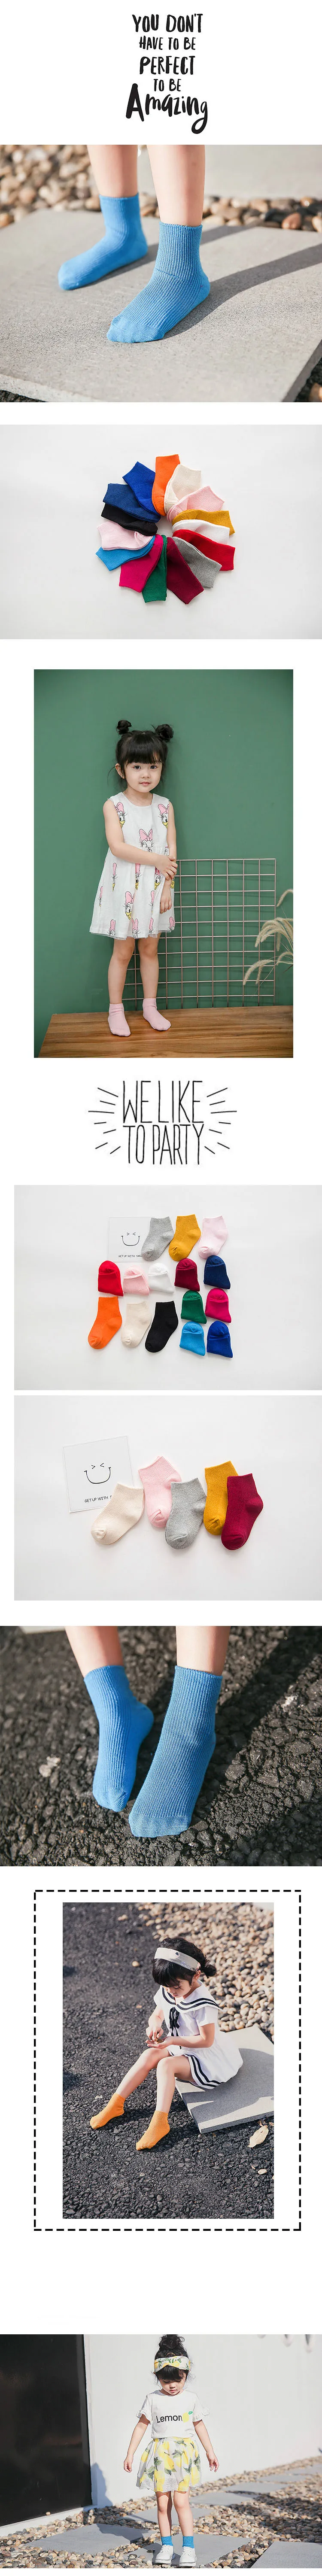 Носки для младенцев, Детские хлопковые носки-башмачки, дышащие детские носки с дезодорантом, простые милые однотонные носки